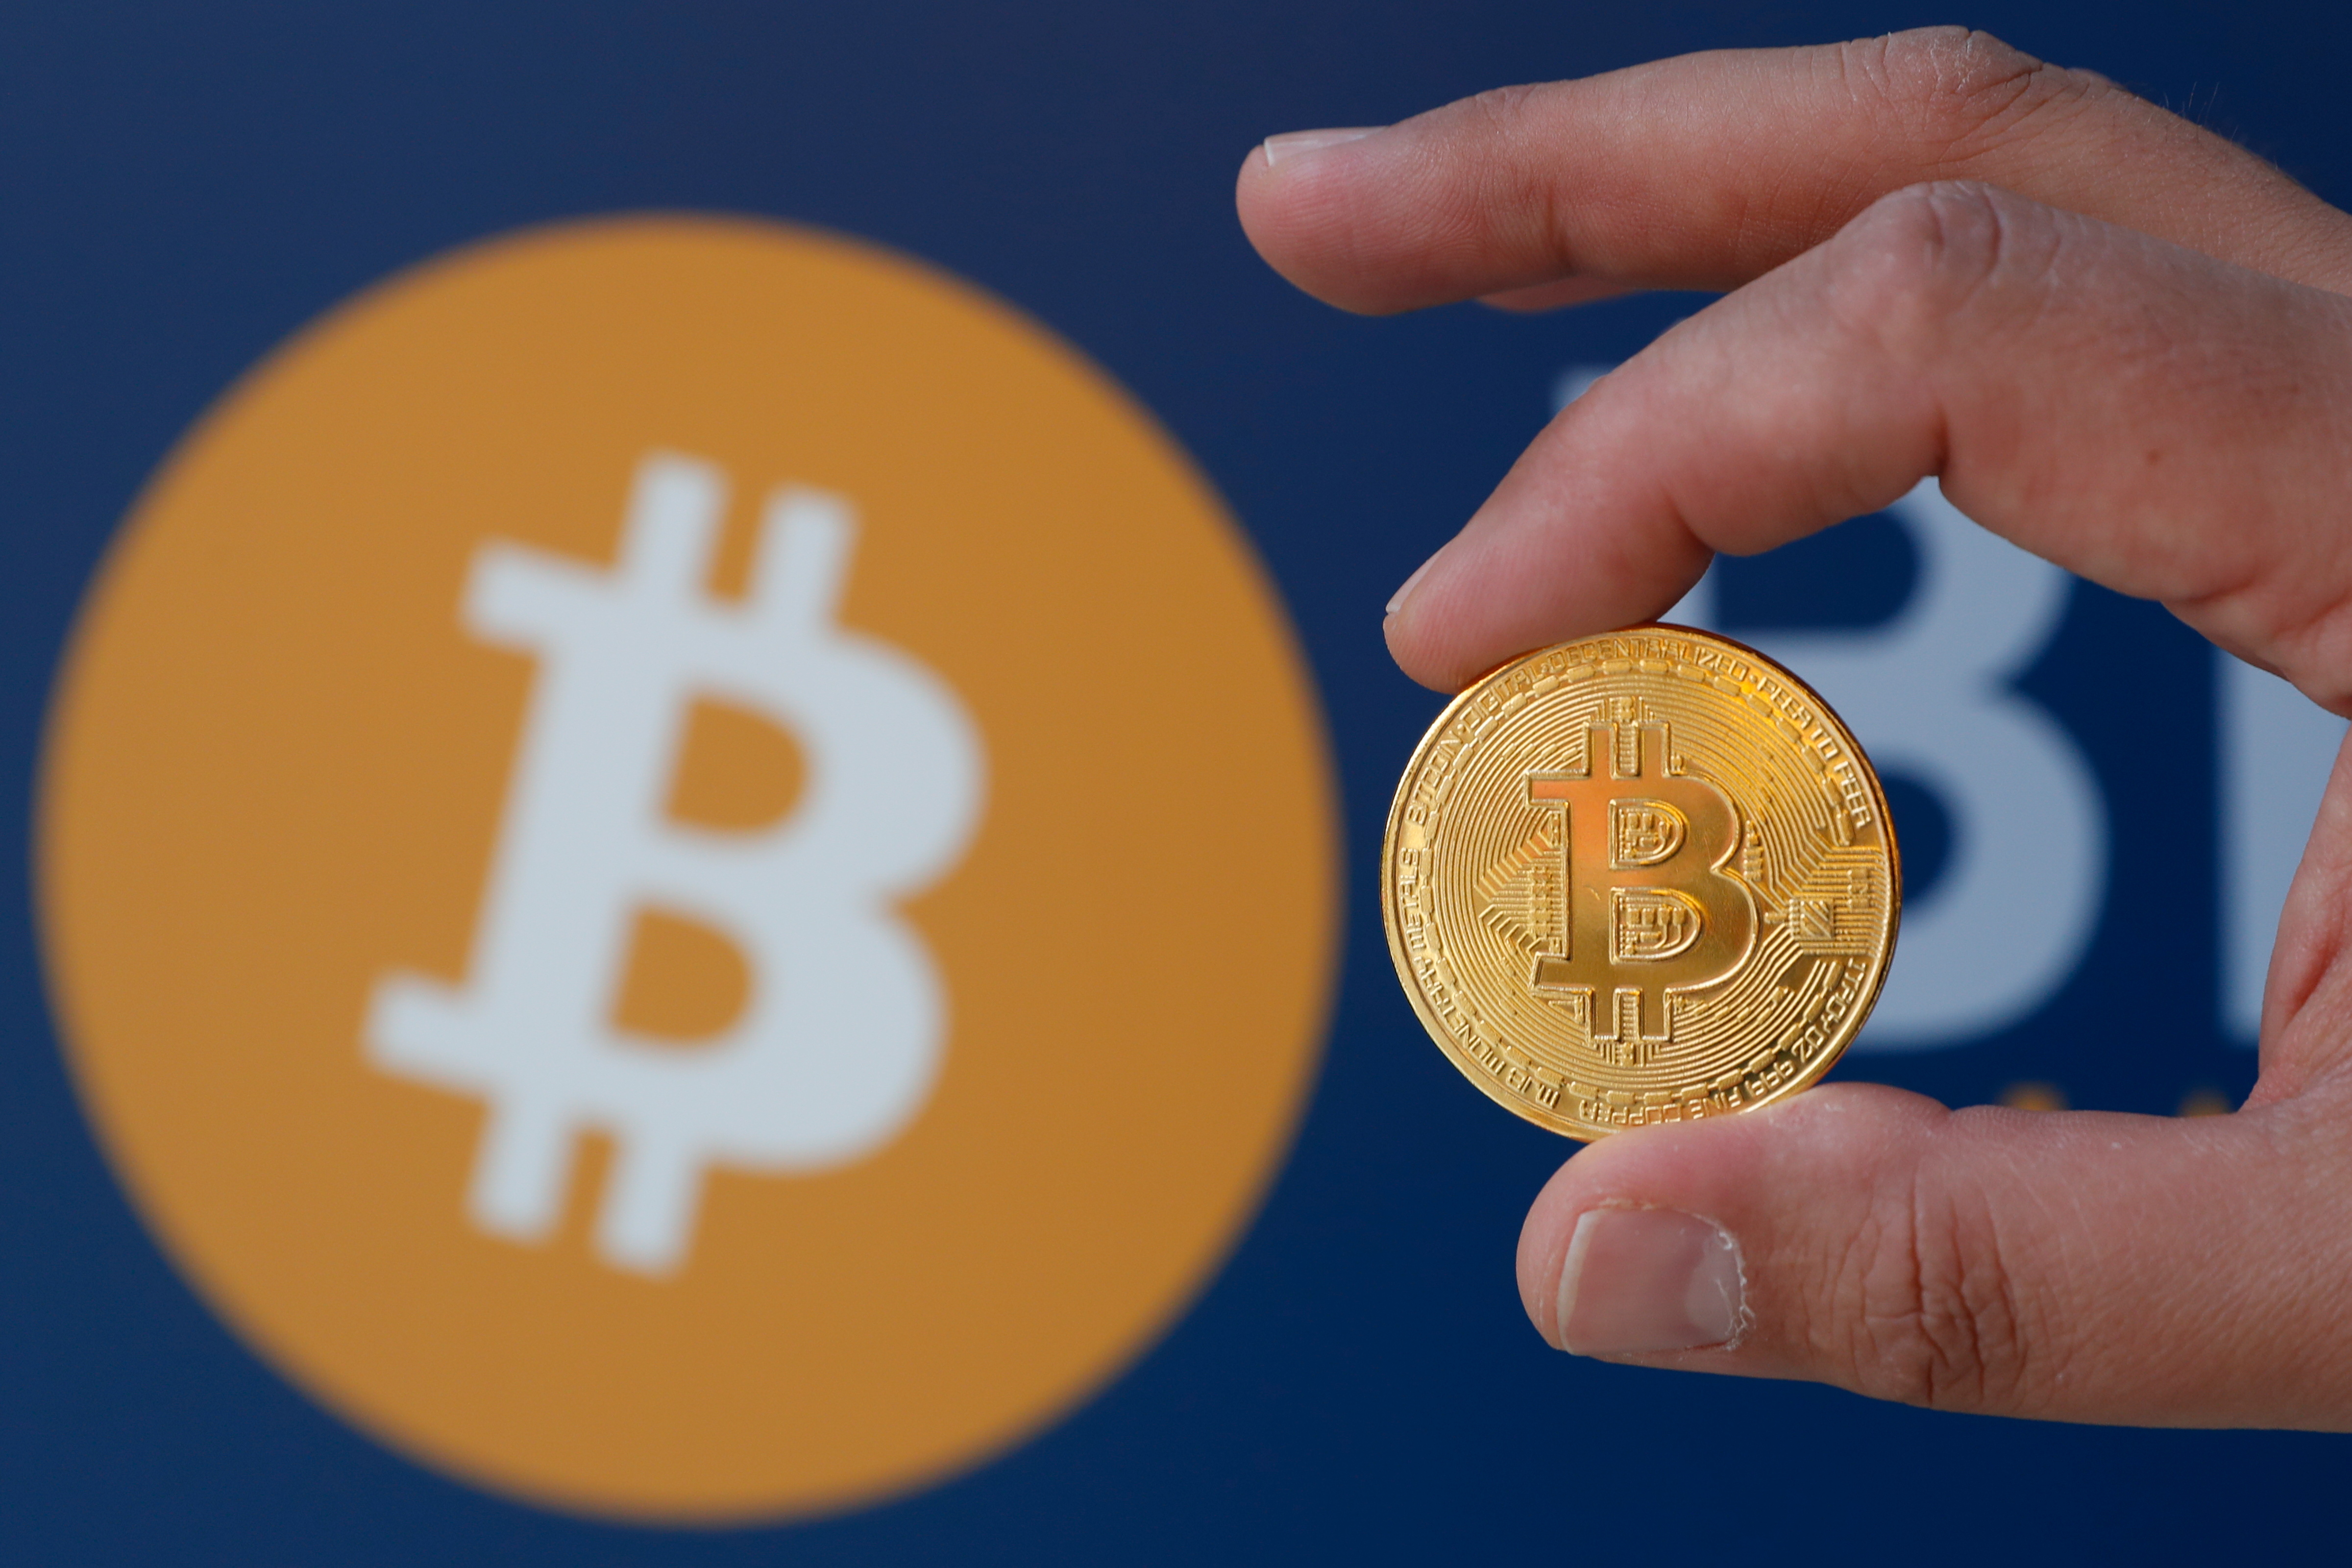 Kriptorinkų apžvalga 2019-08-27. Bitcoin ir ekonomika - Crypto